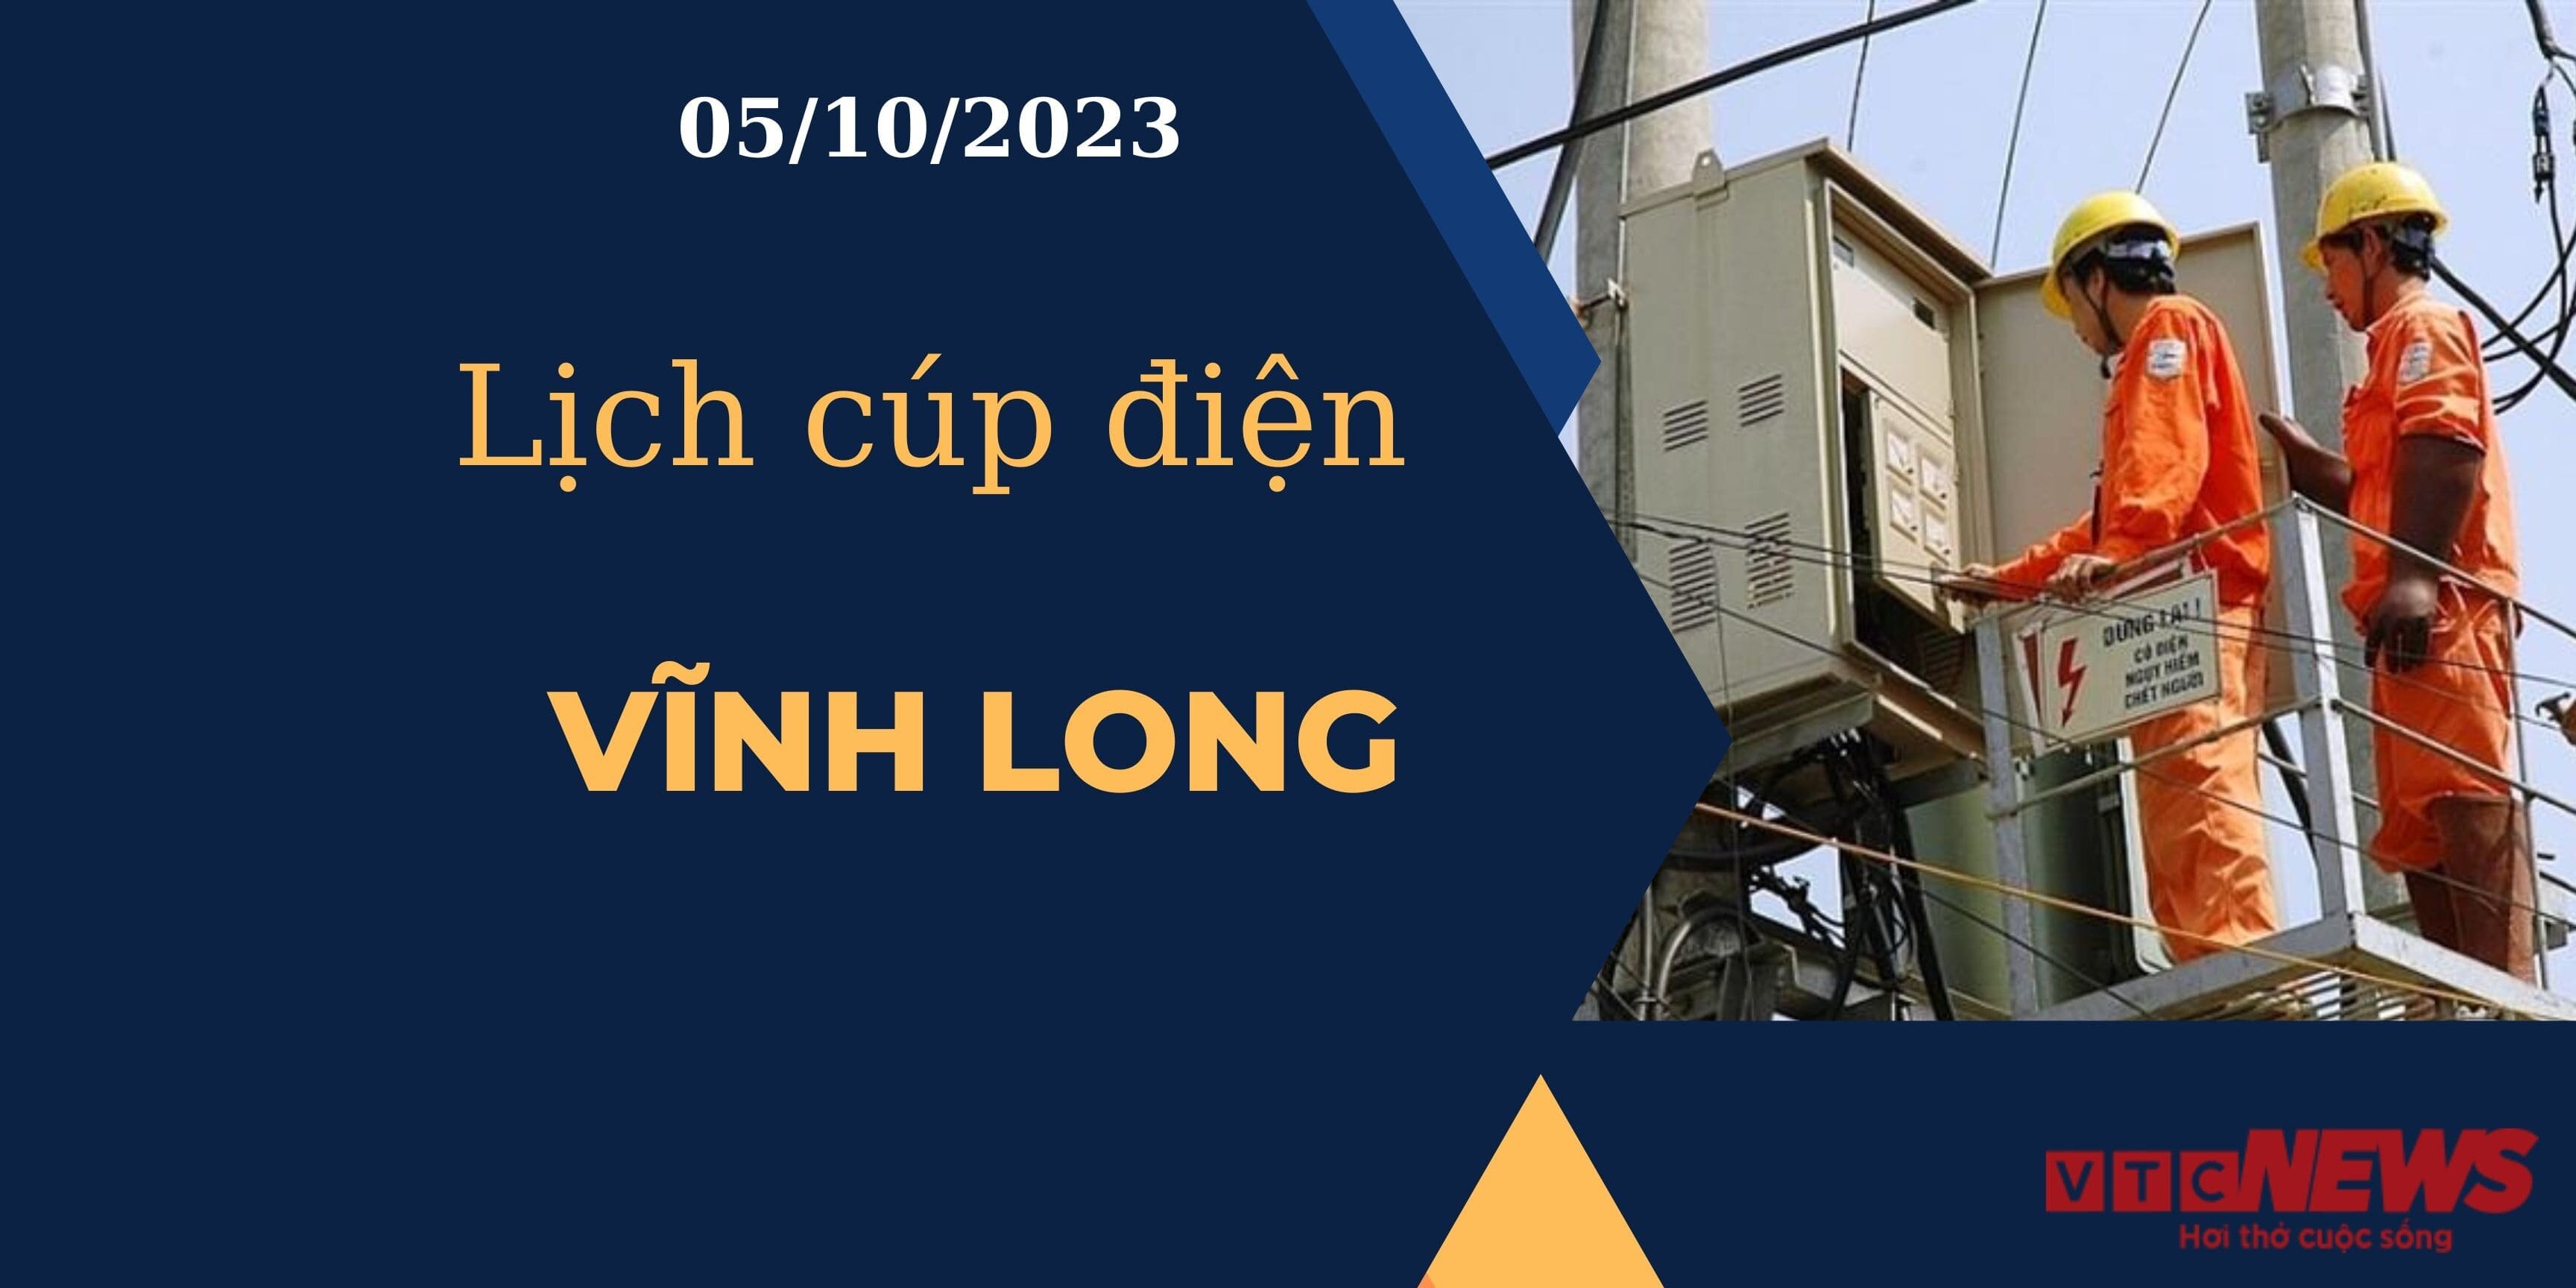 Lịch cúp điện hôm nay ngày 05/10/2023 tại Vĩnh Long